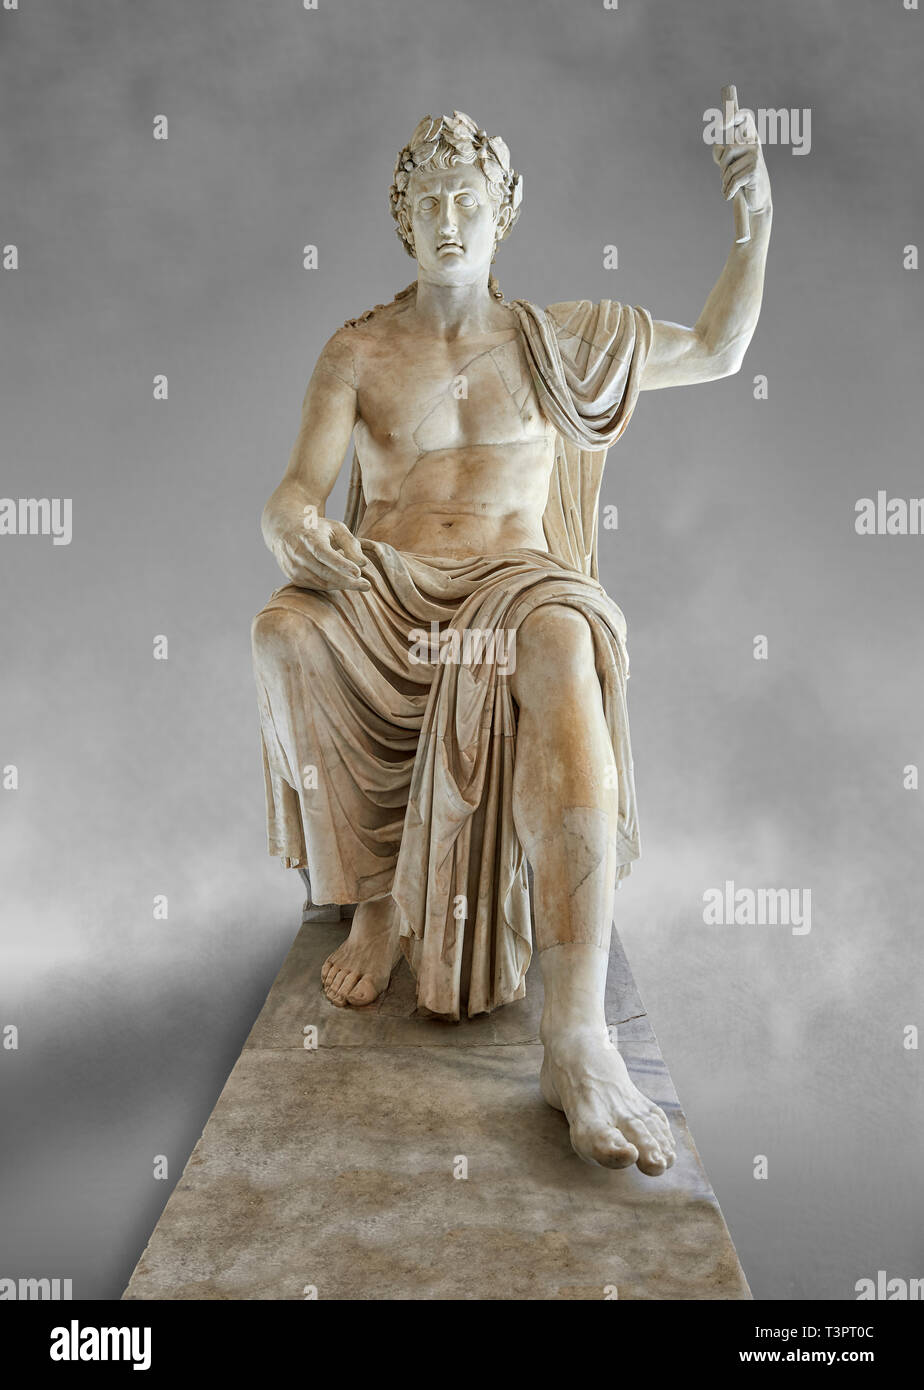 Romano asentado staue colosal de Augusto César, de mármol blanco, de finales del primer siglo, B.C, inv 6040, Nápoles, Museo Nacional de Arqueología, Arte backgr gris Foto de stock